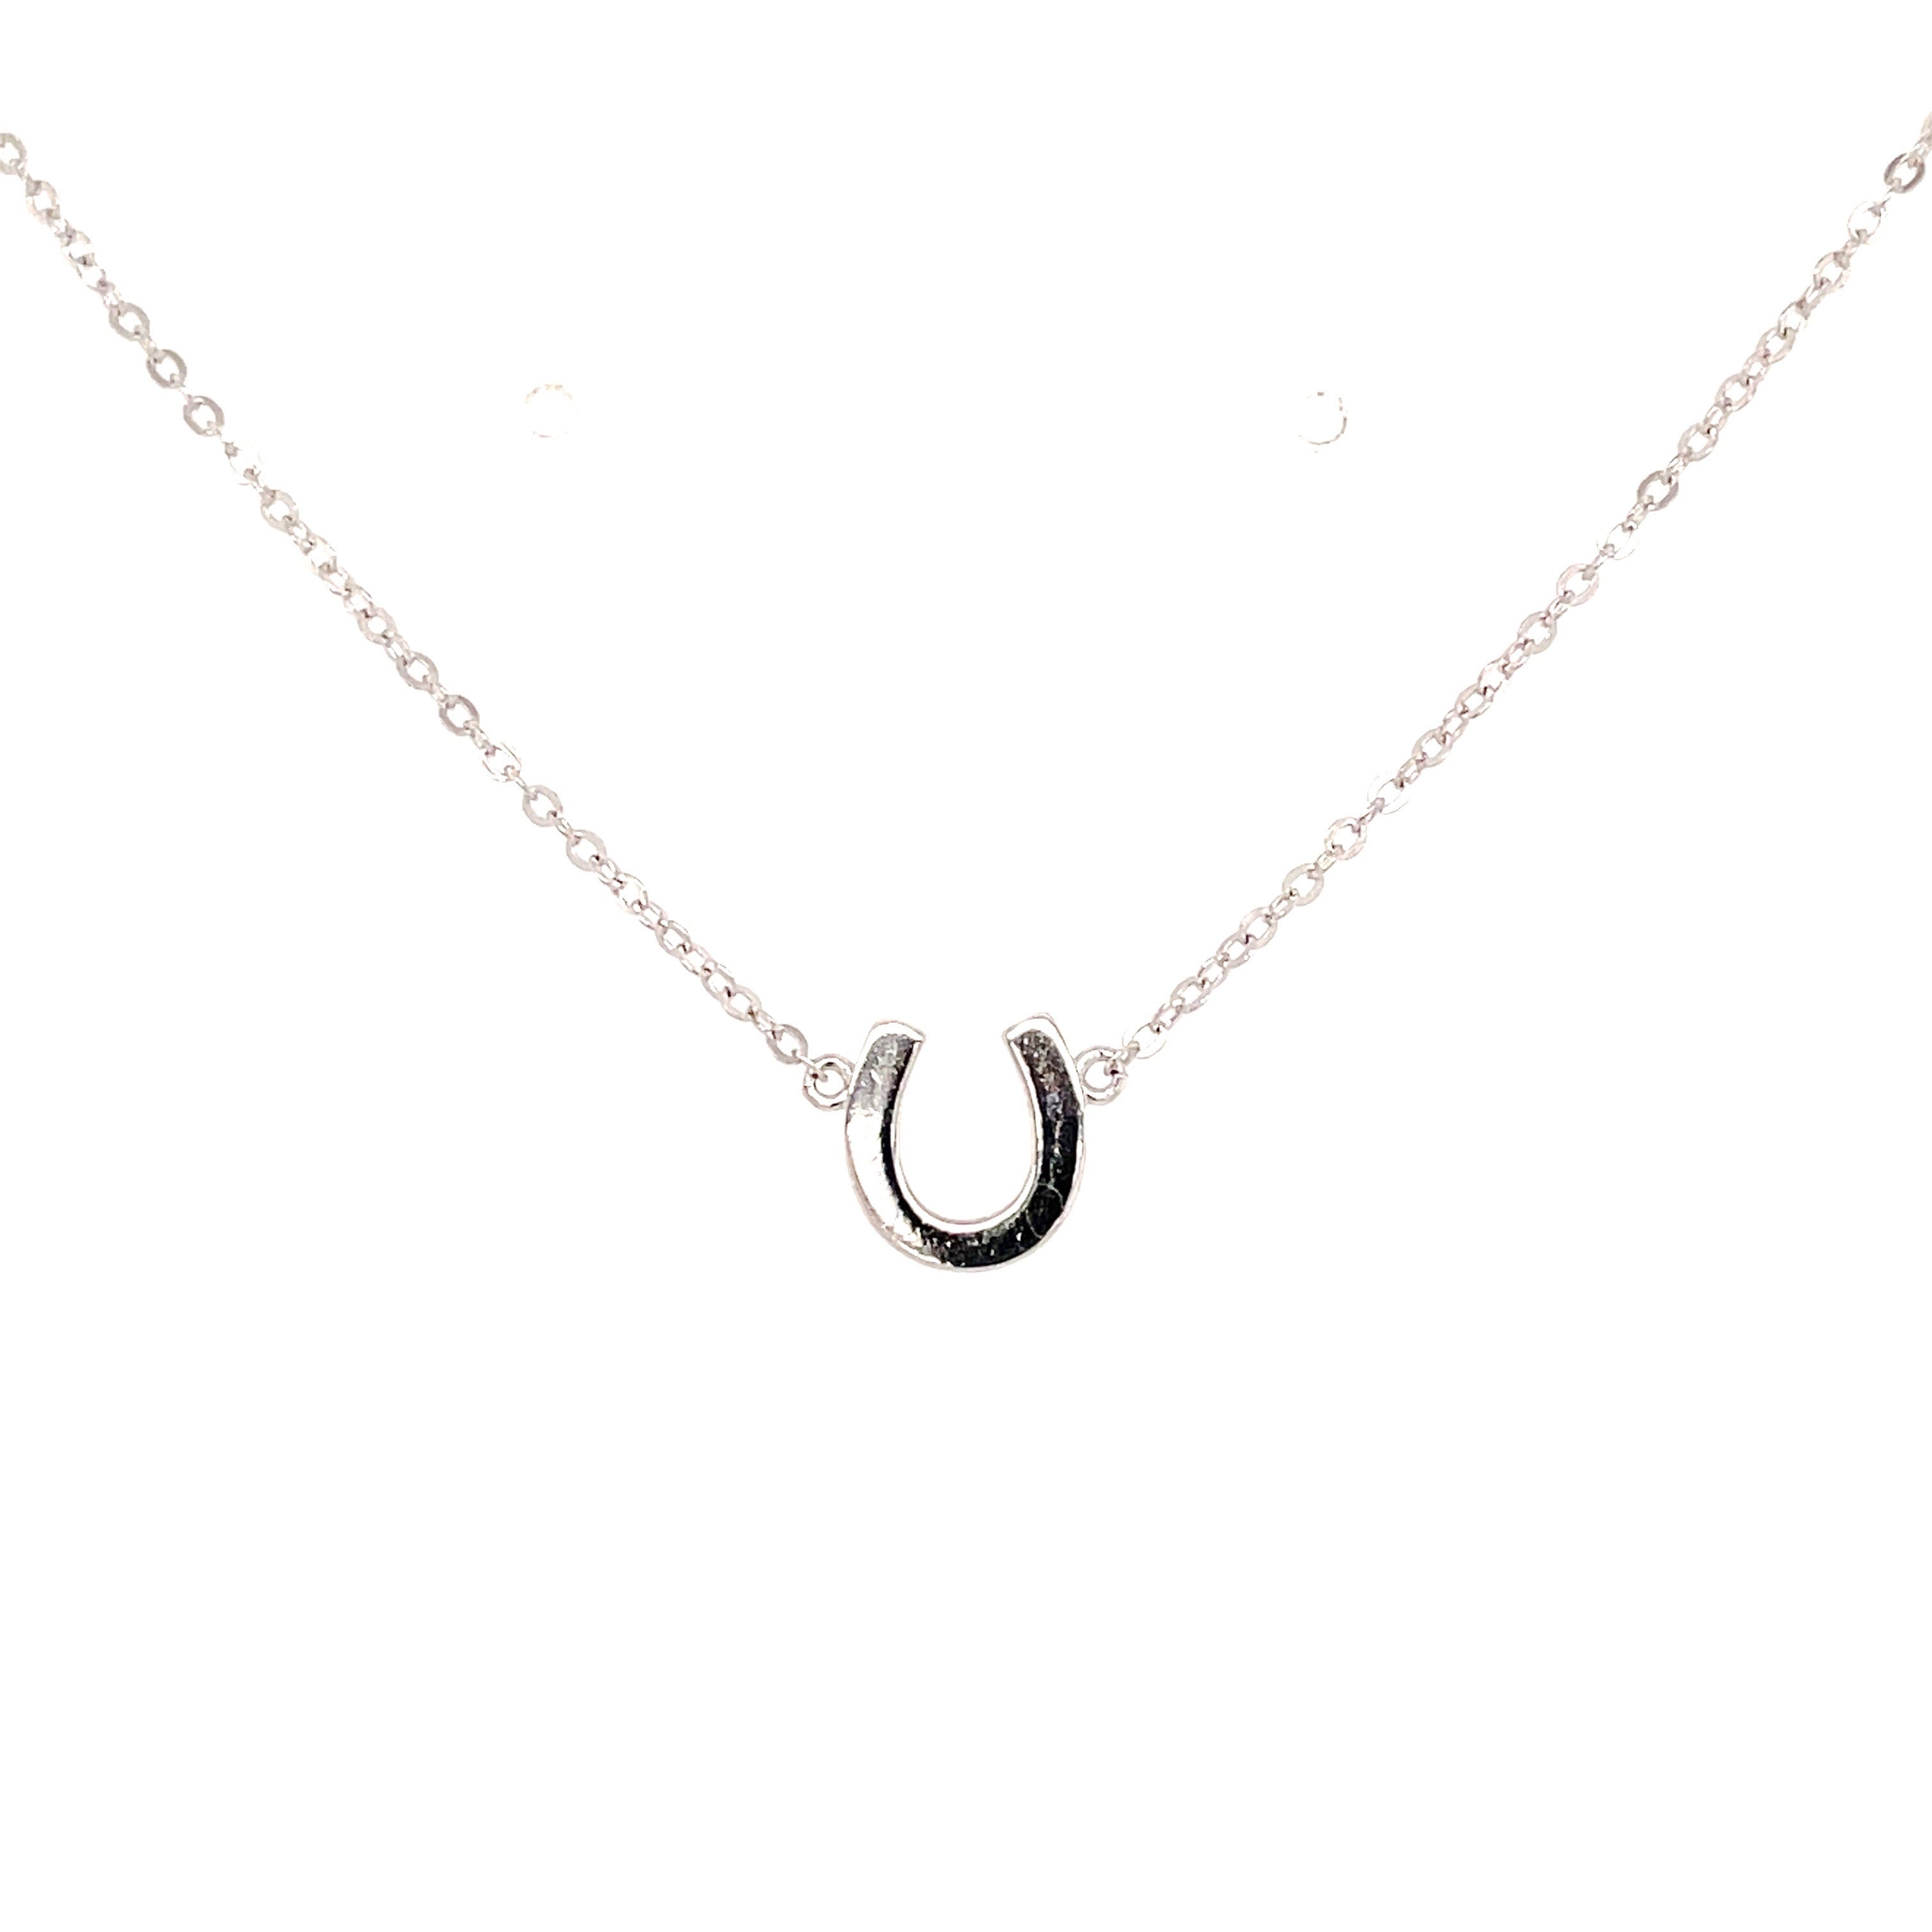 Tiny plain silver horseshoe necklace